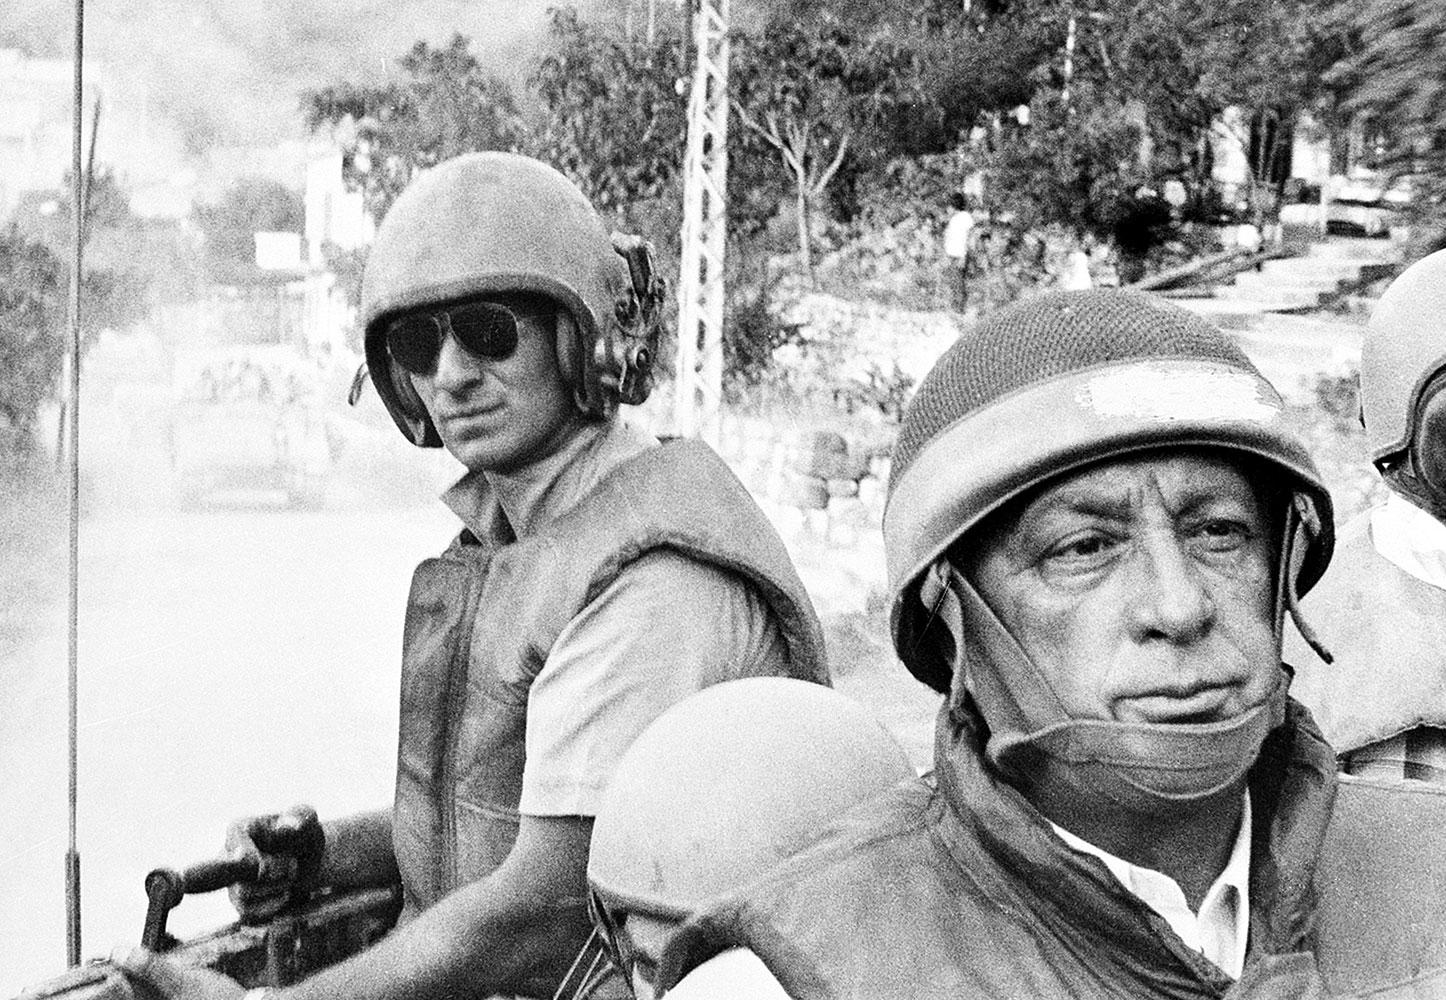 Beirut Ariel Sharon åker bandvagn i Beirut 1982. Åter efter fick han avgå som försvarsminister efter massakrerna i Sabra och Shatila